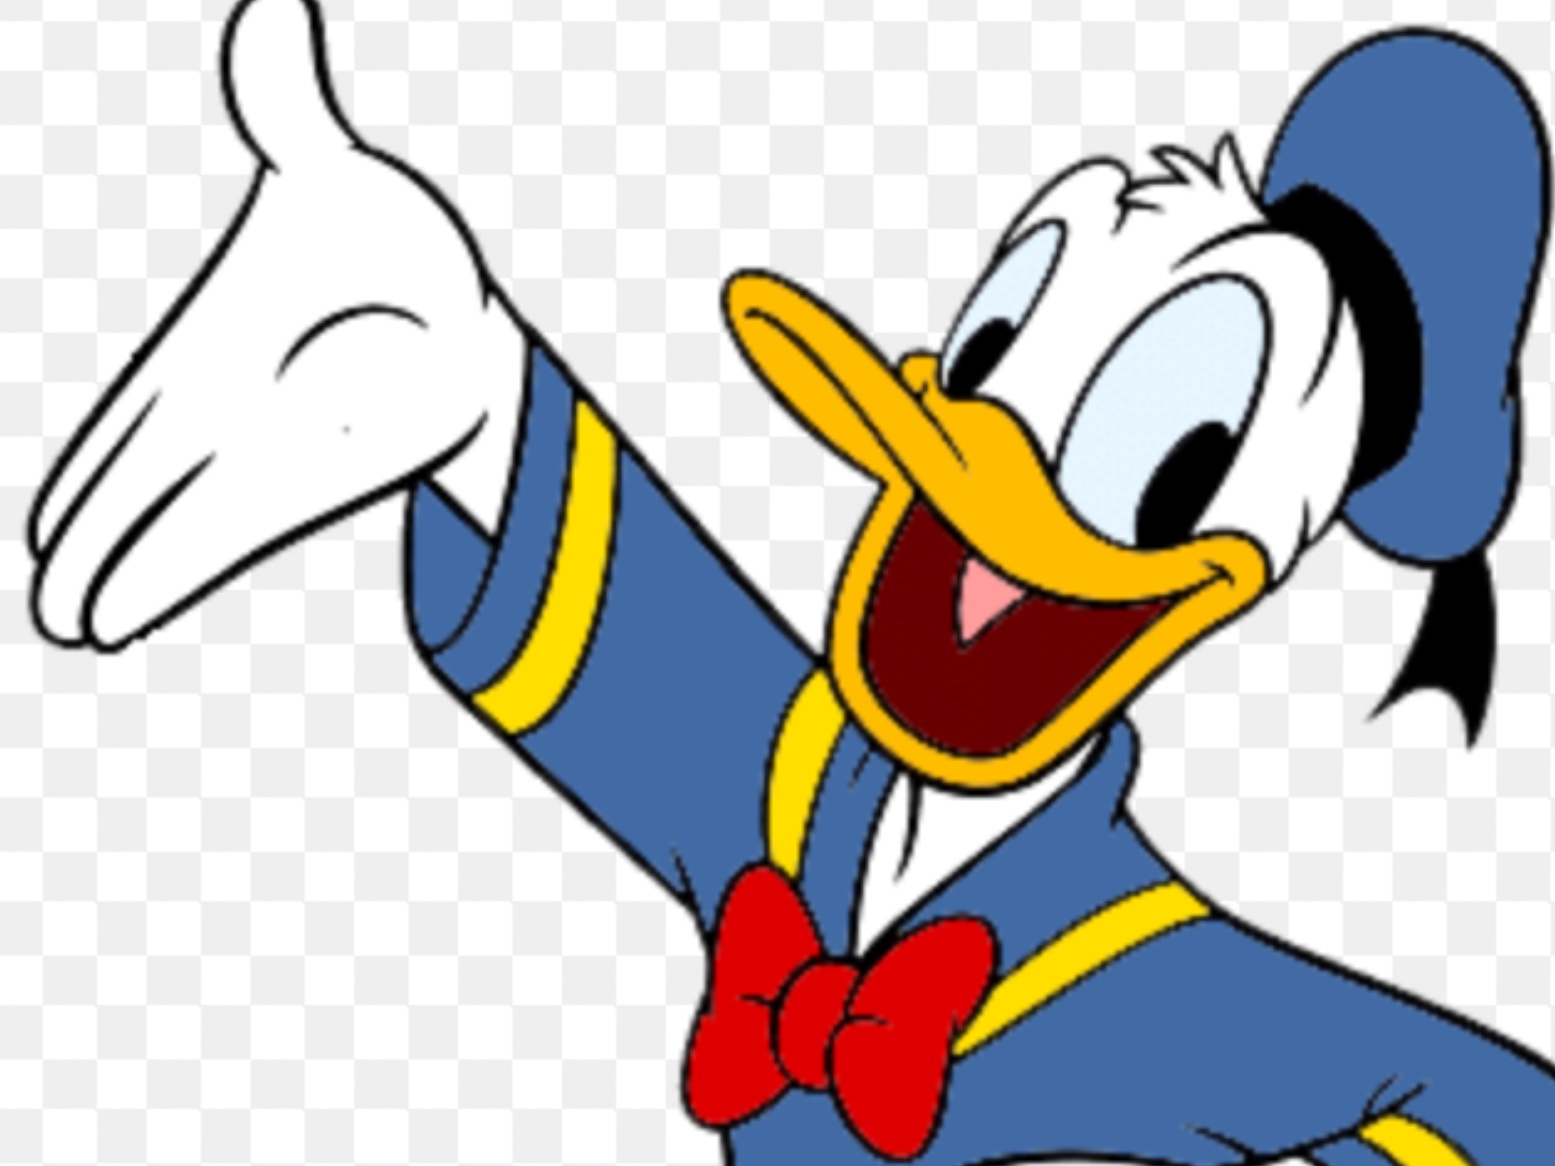 Donald Duck Hero Concept.